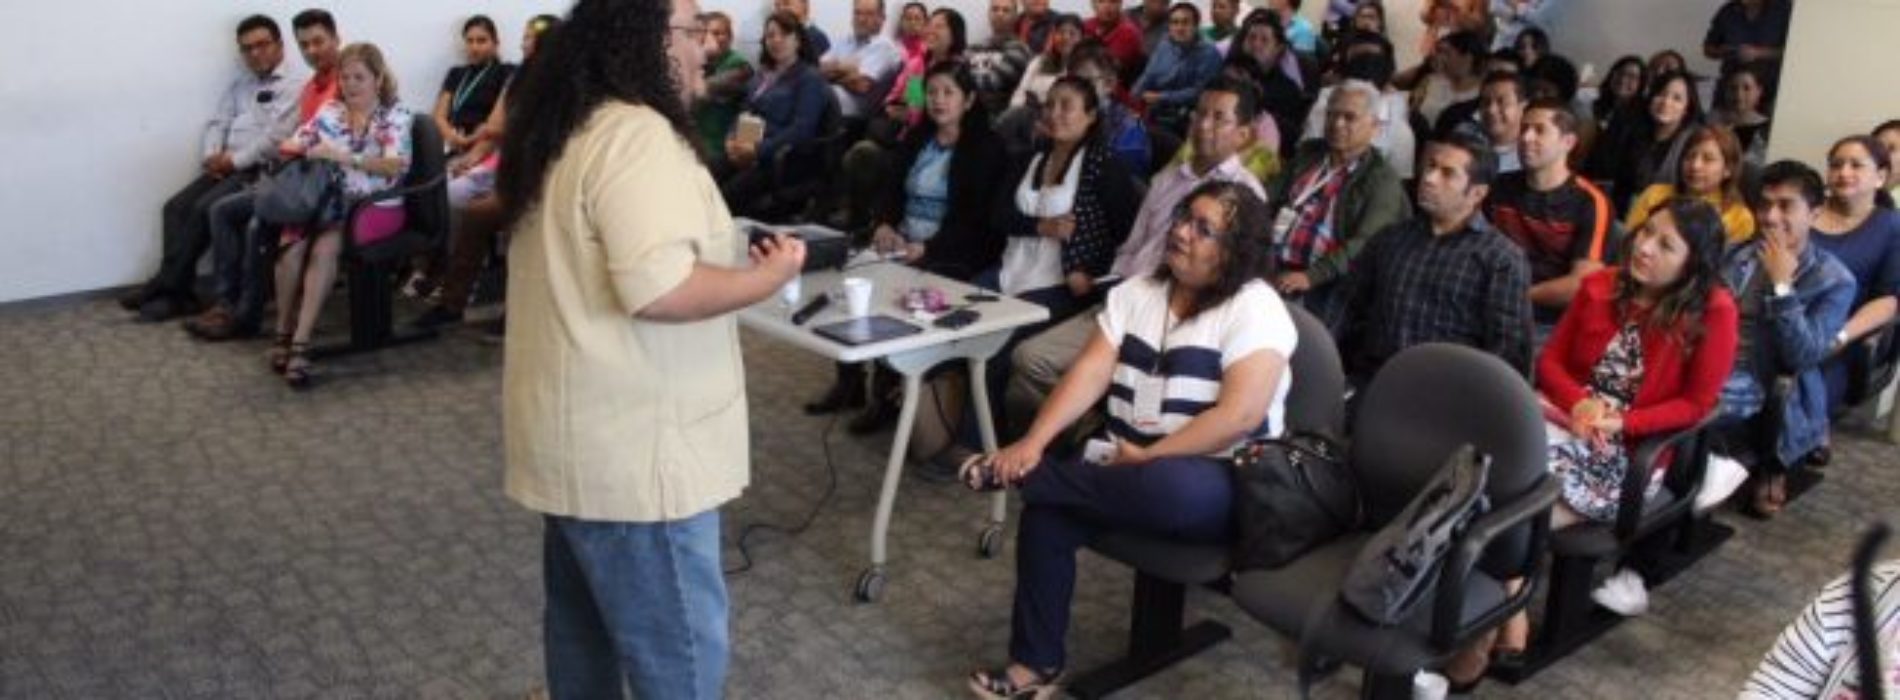 Personal del Gobierno de Oaxaca comprometido con la
perspectiva de género en relaciones sociales